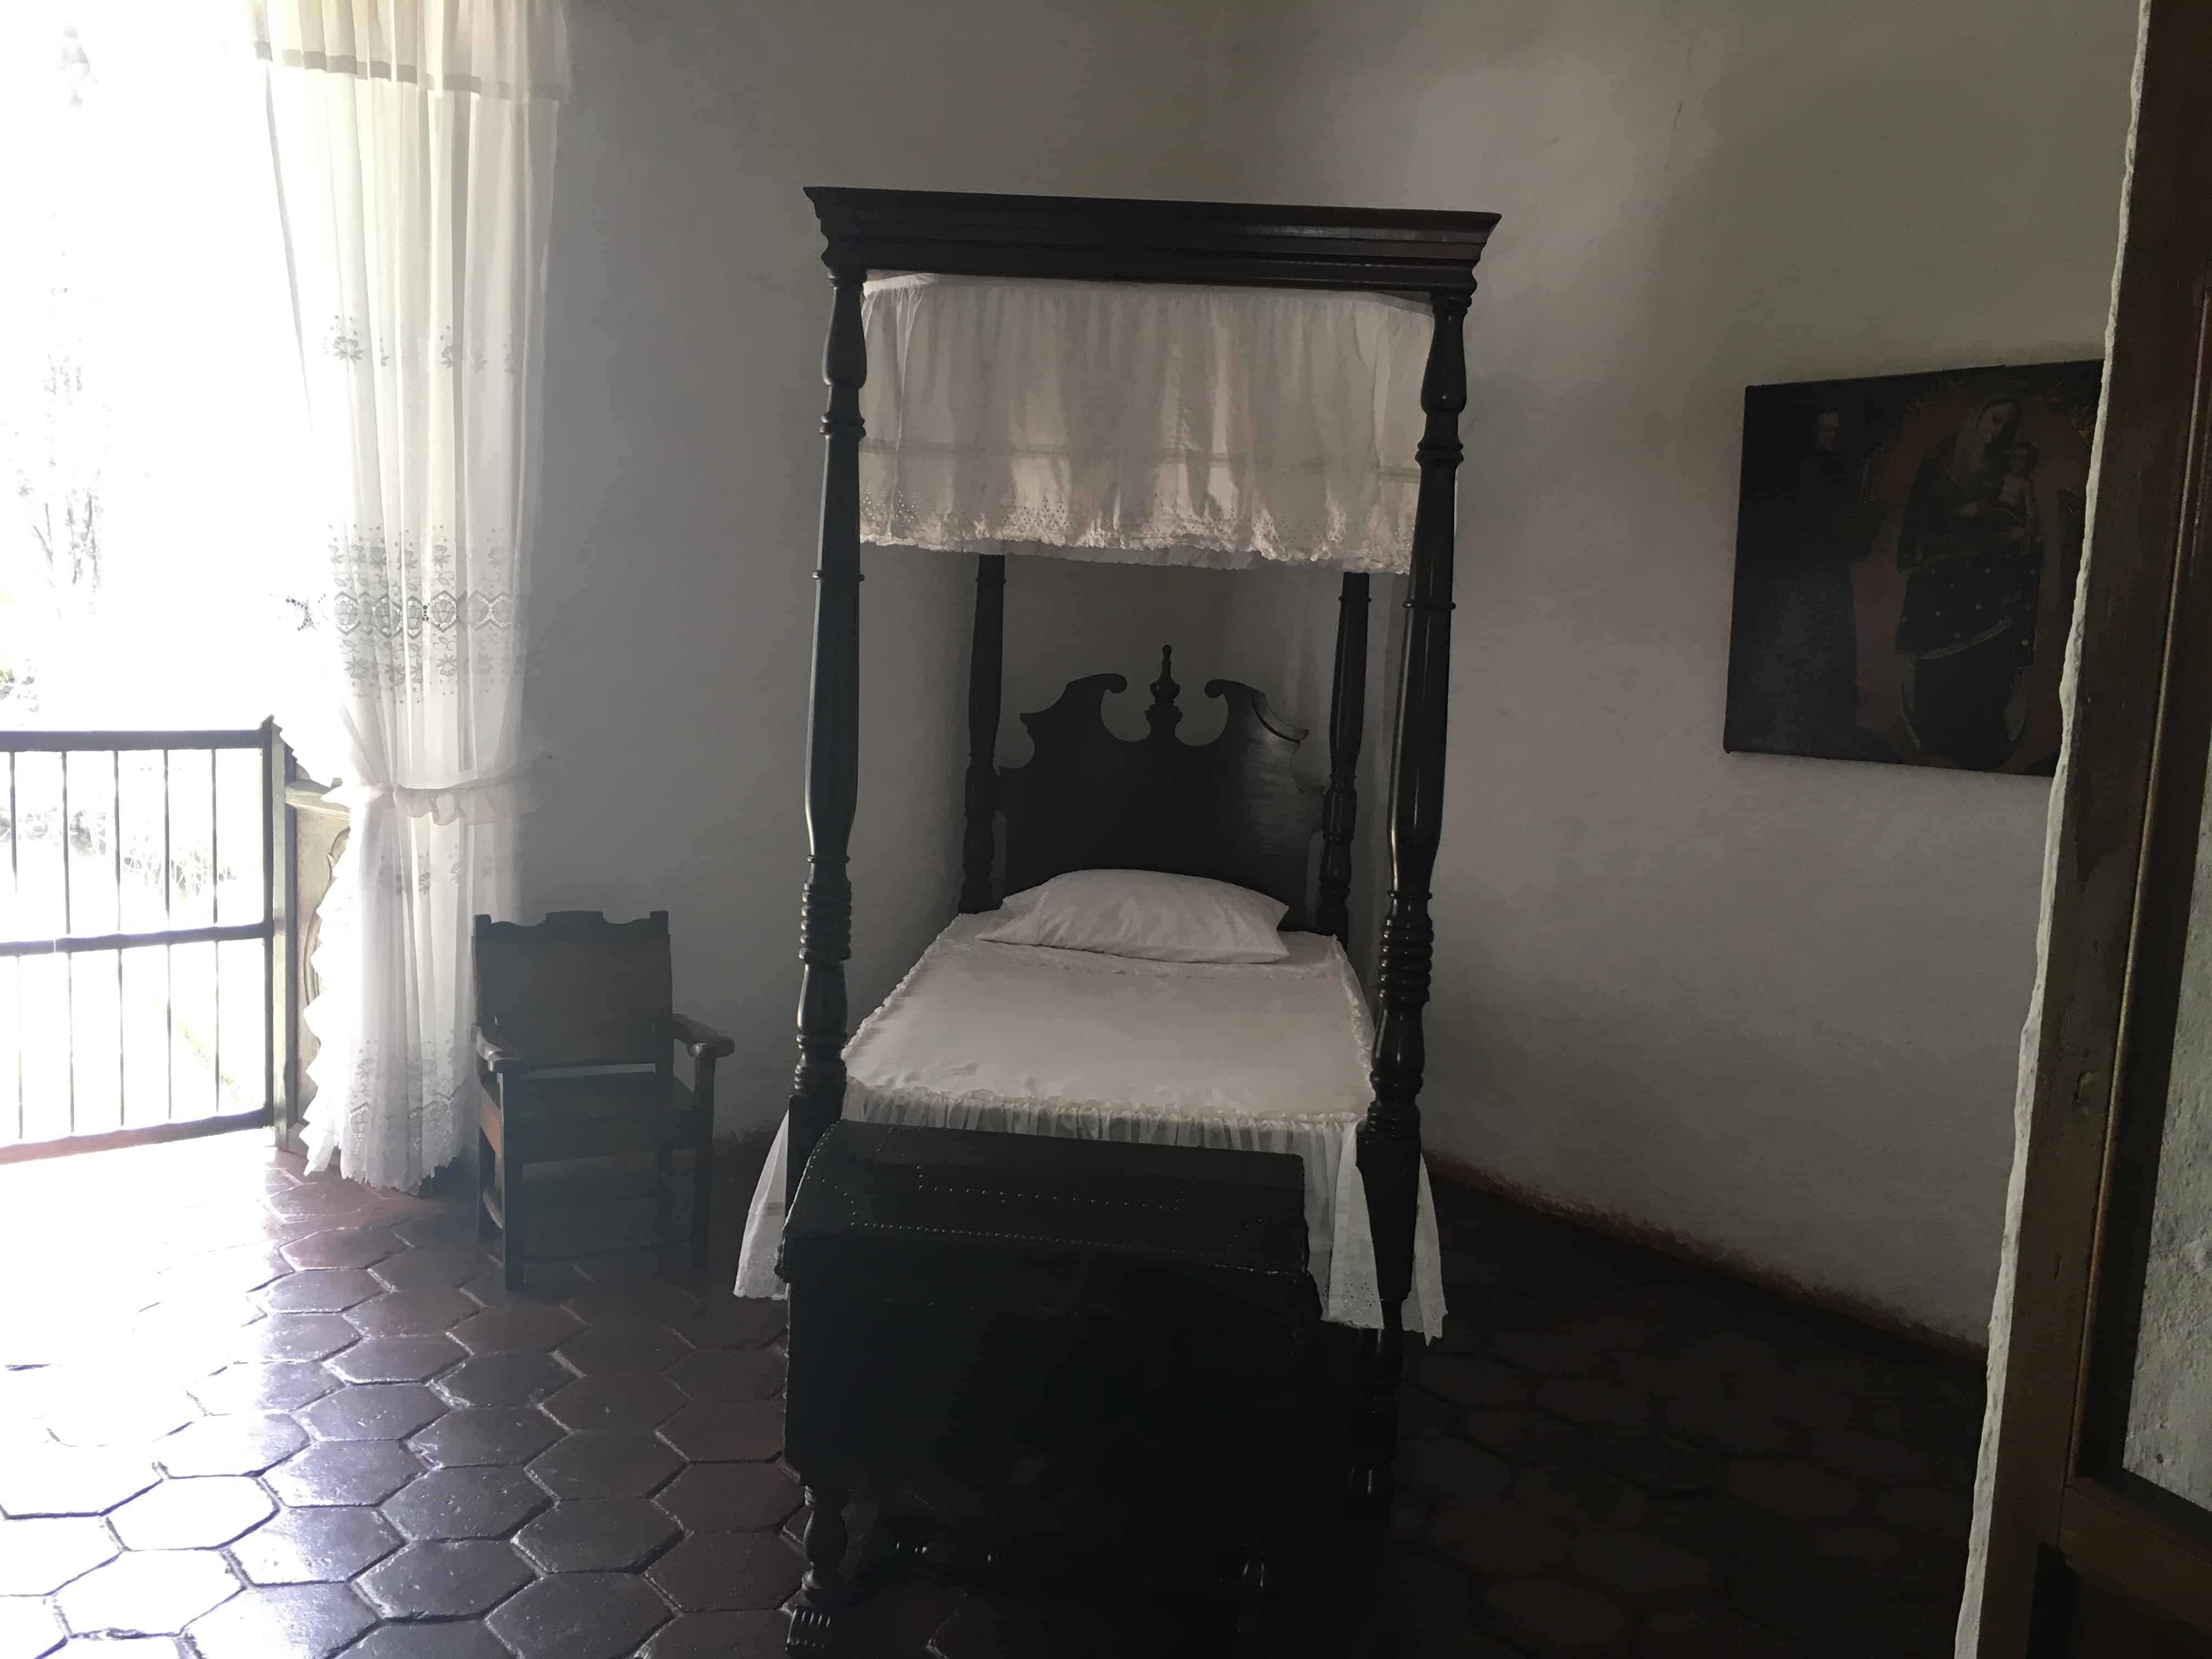 María's room at Hacienda El Paraíso in Valle del Cauca, Colombia